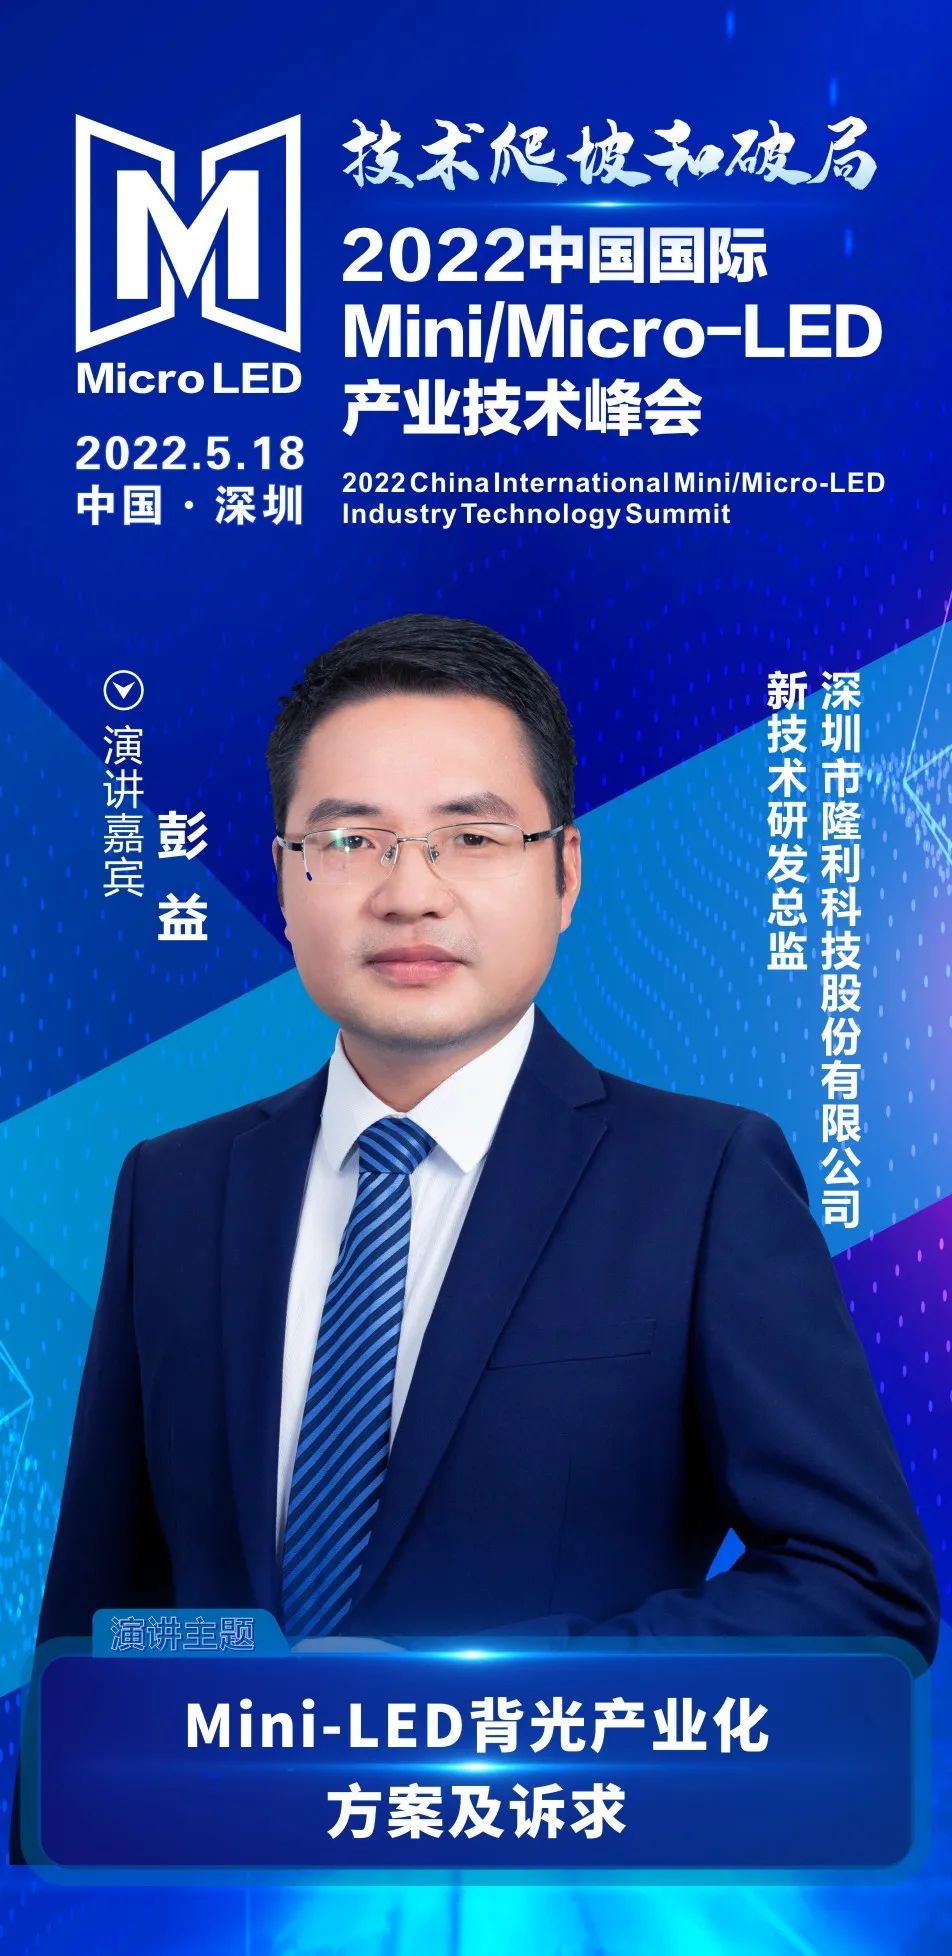 技术爬坡和破局 | 隆利科技新技术研发总监彭益确认出席2022中国国际Mini/Micro-LED产业技术峰会